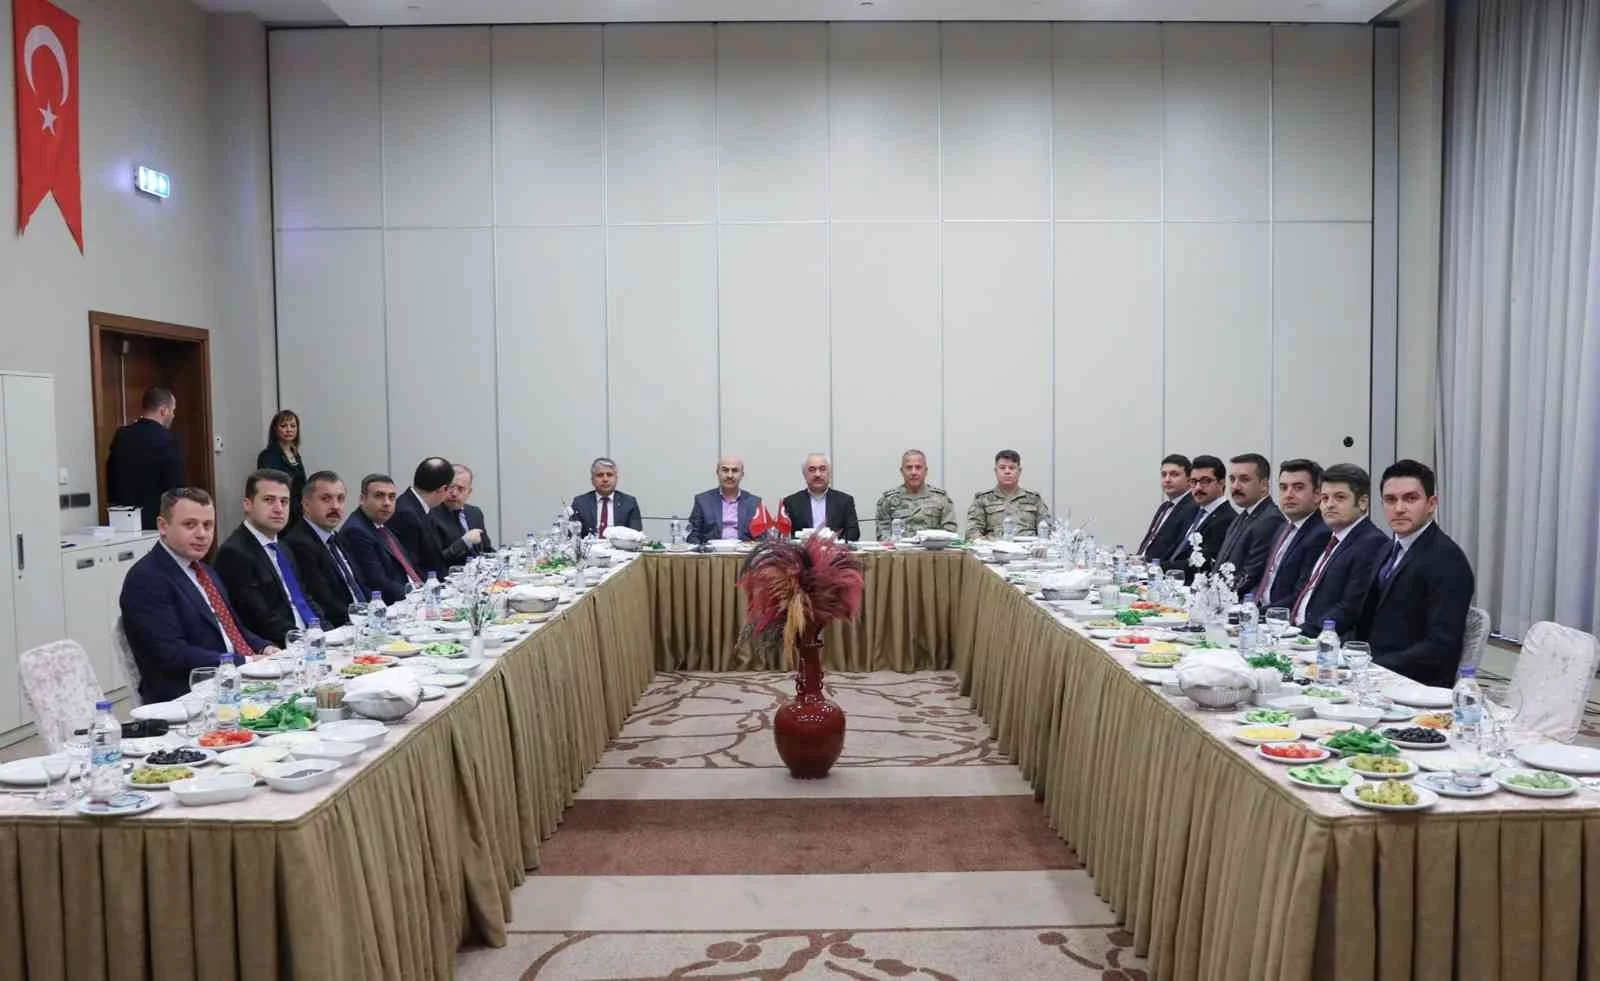 İçişleri Bakan Yardımcısı Ersoyun Başkanlığında değerlendirme toplantısı